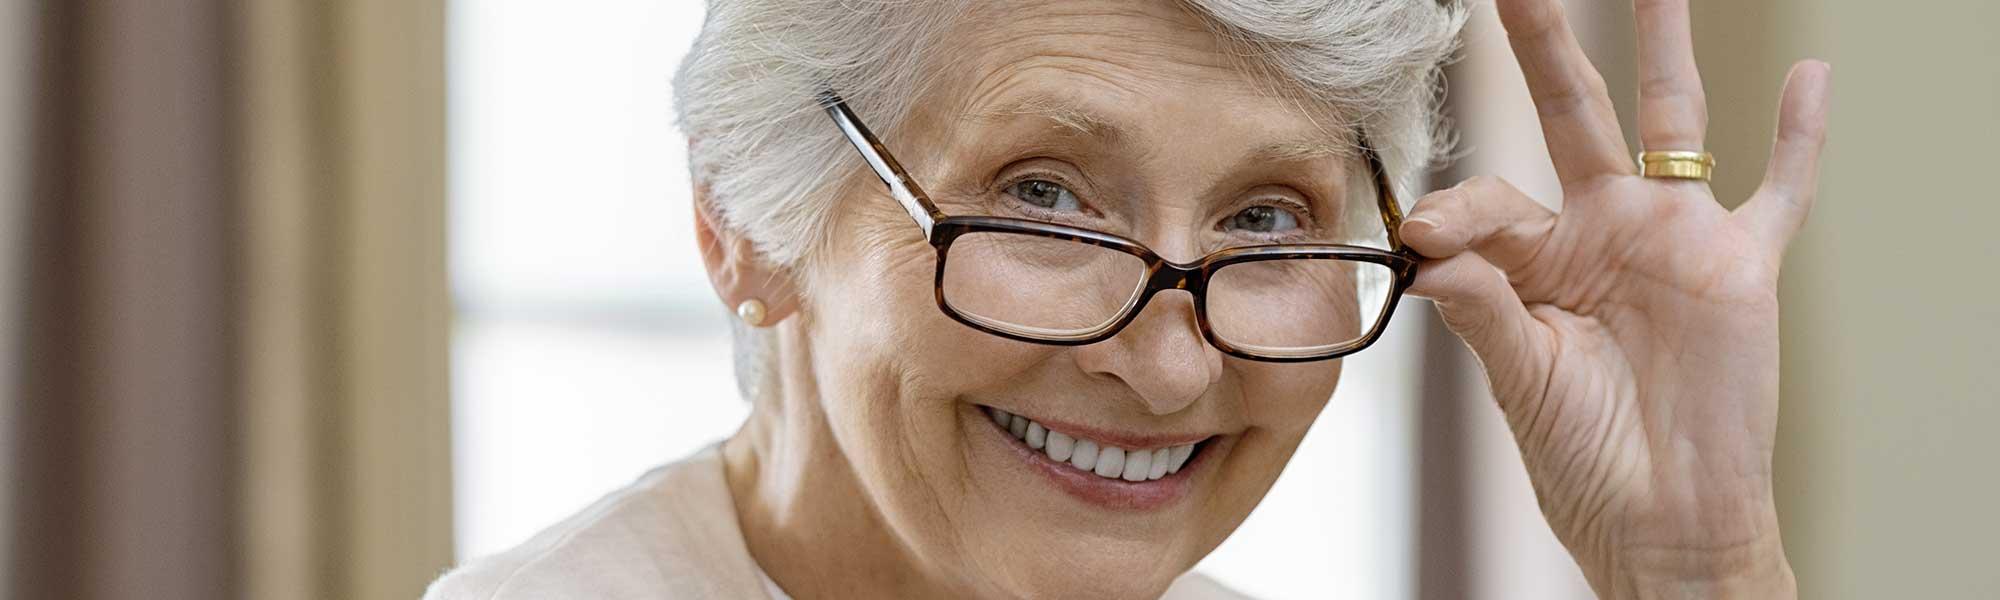 Cataracte, glaucome : les autres pathologies oculaires liées au vieillissement